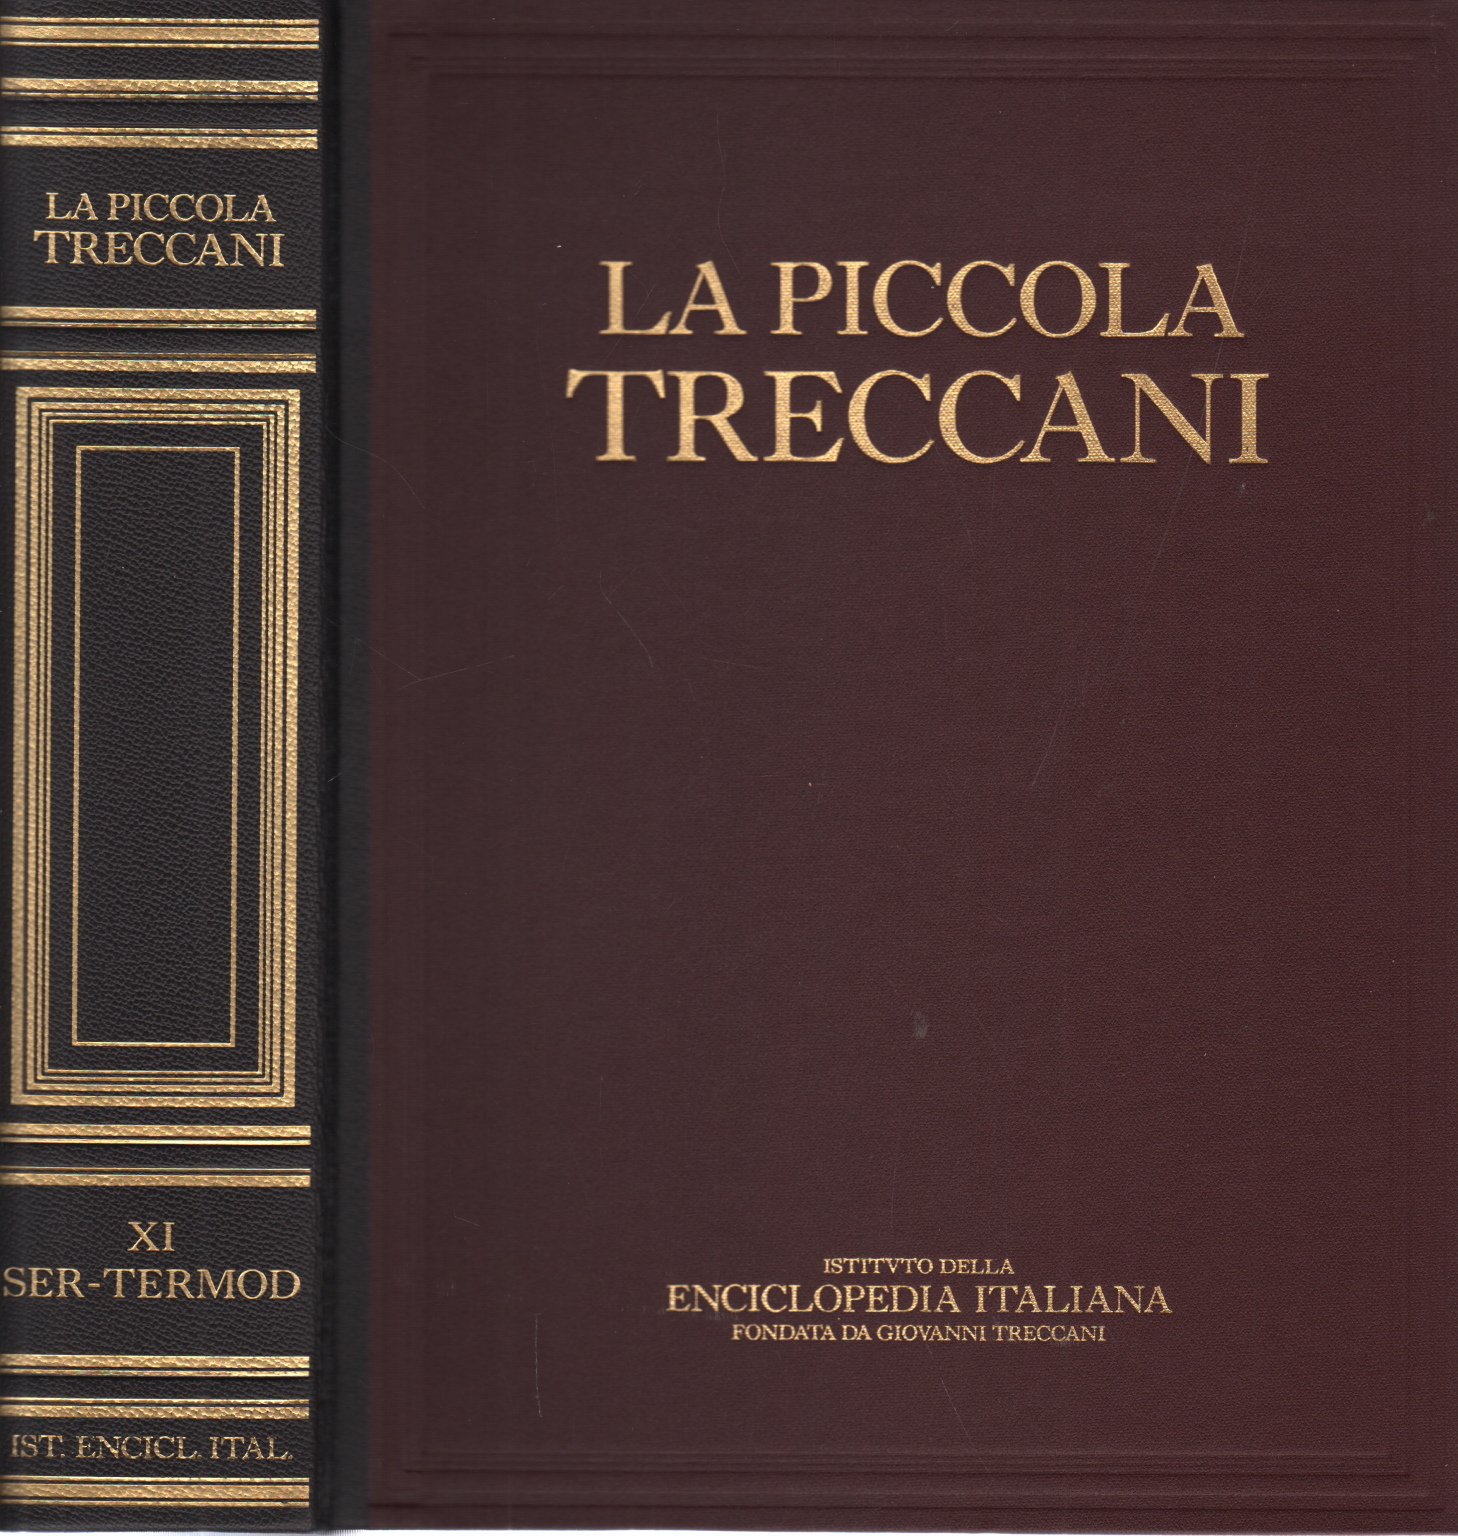 The Little Treccani XI Ser-Termod